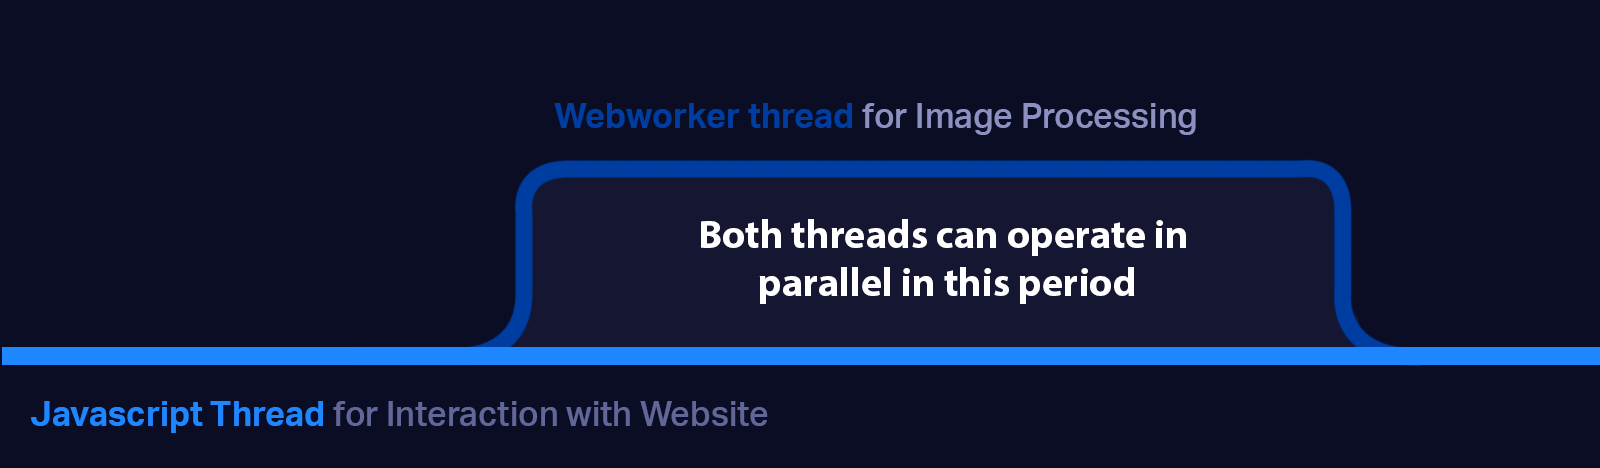 Webworker flow